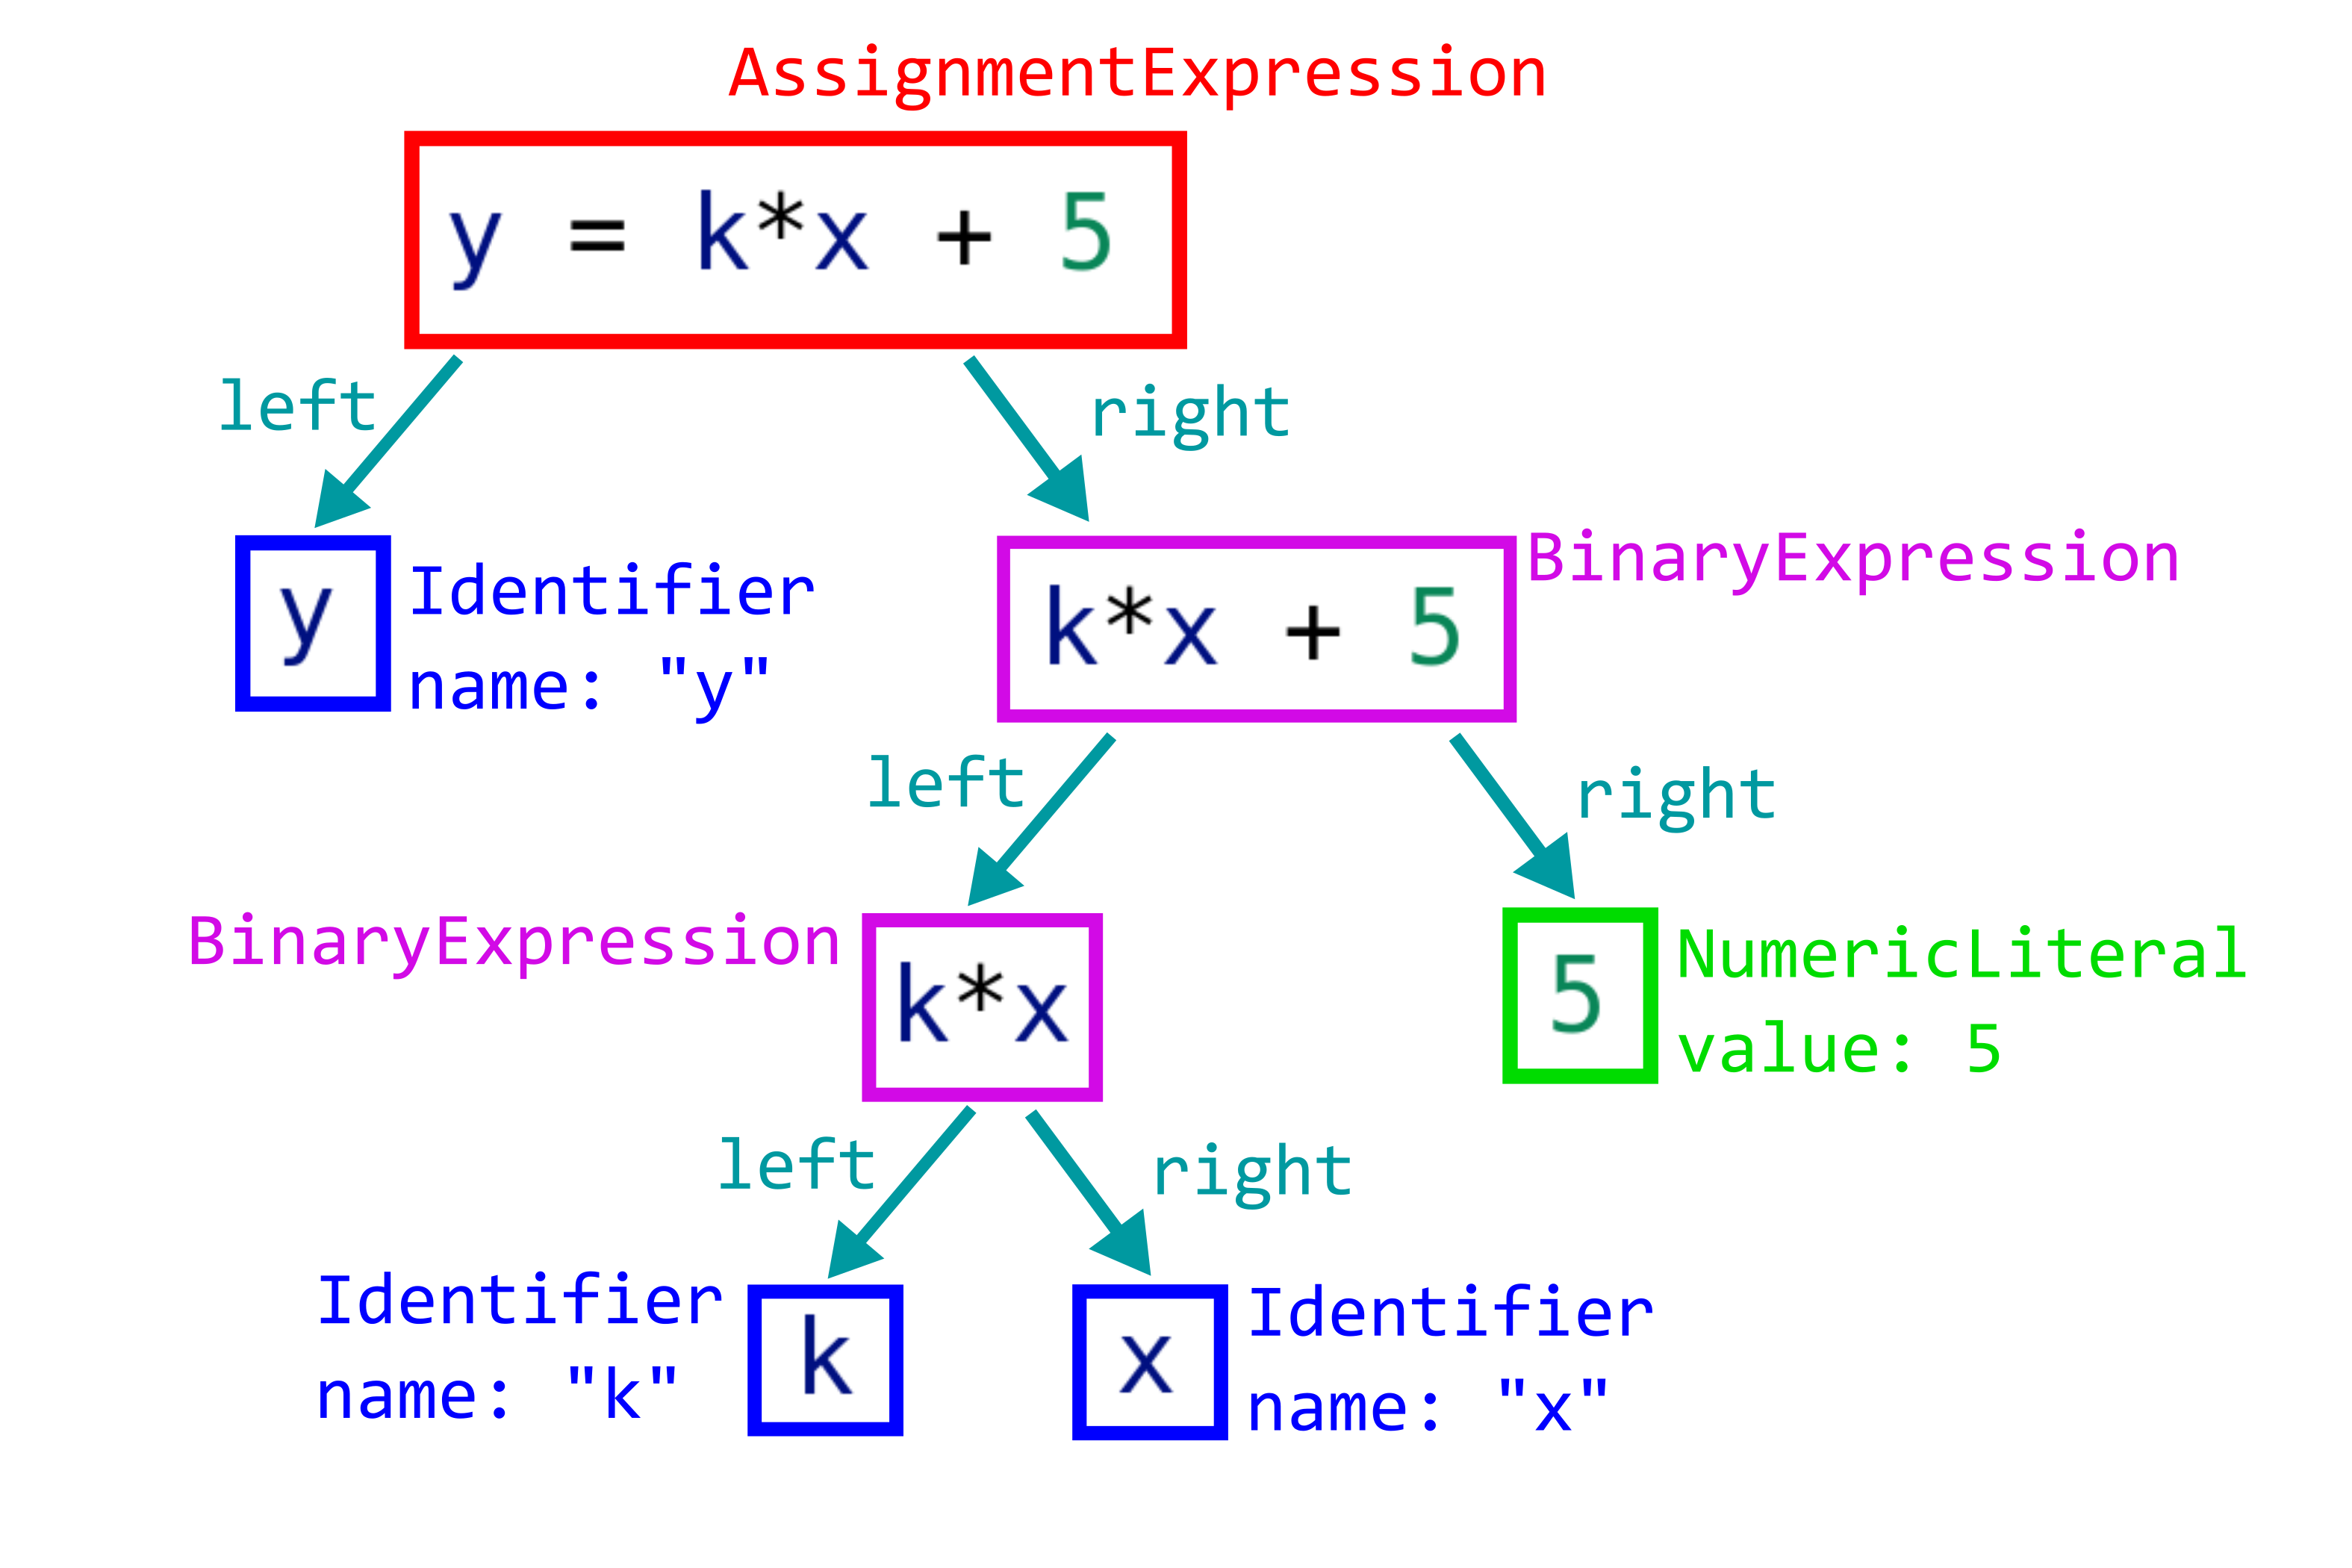 AST-дерево для кода <<y = k*x + 5>>